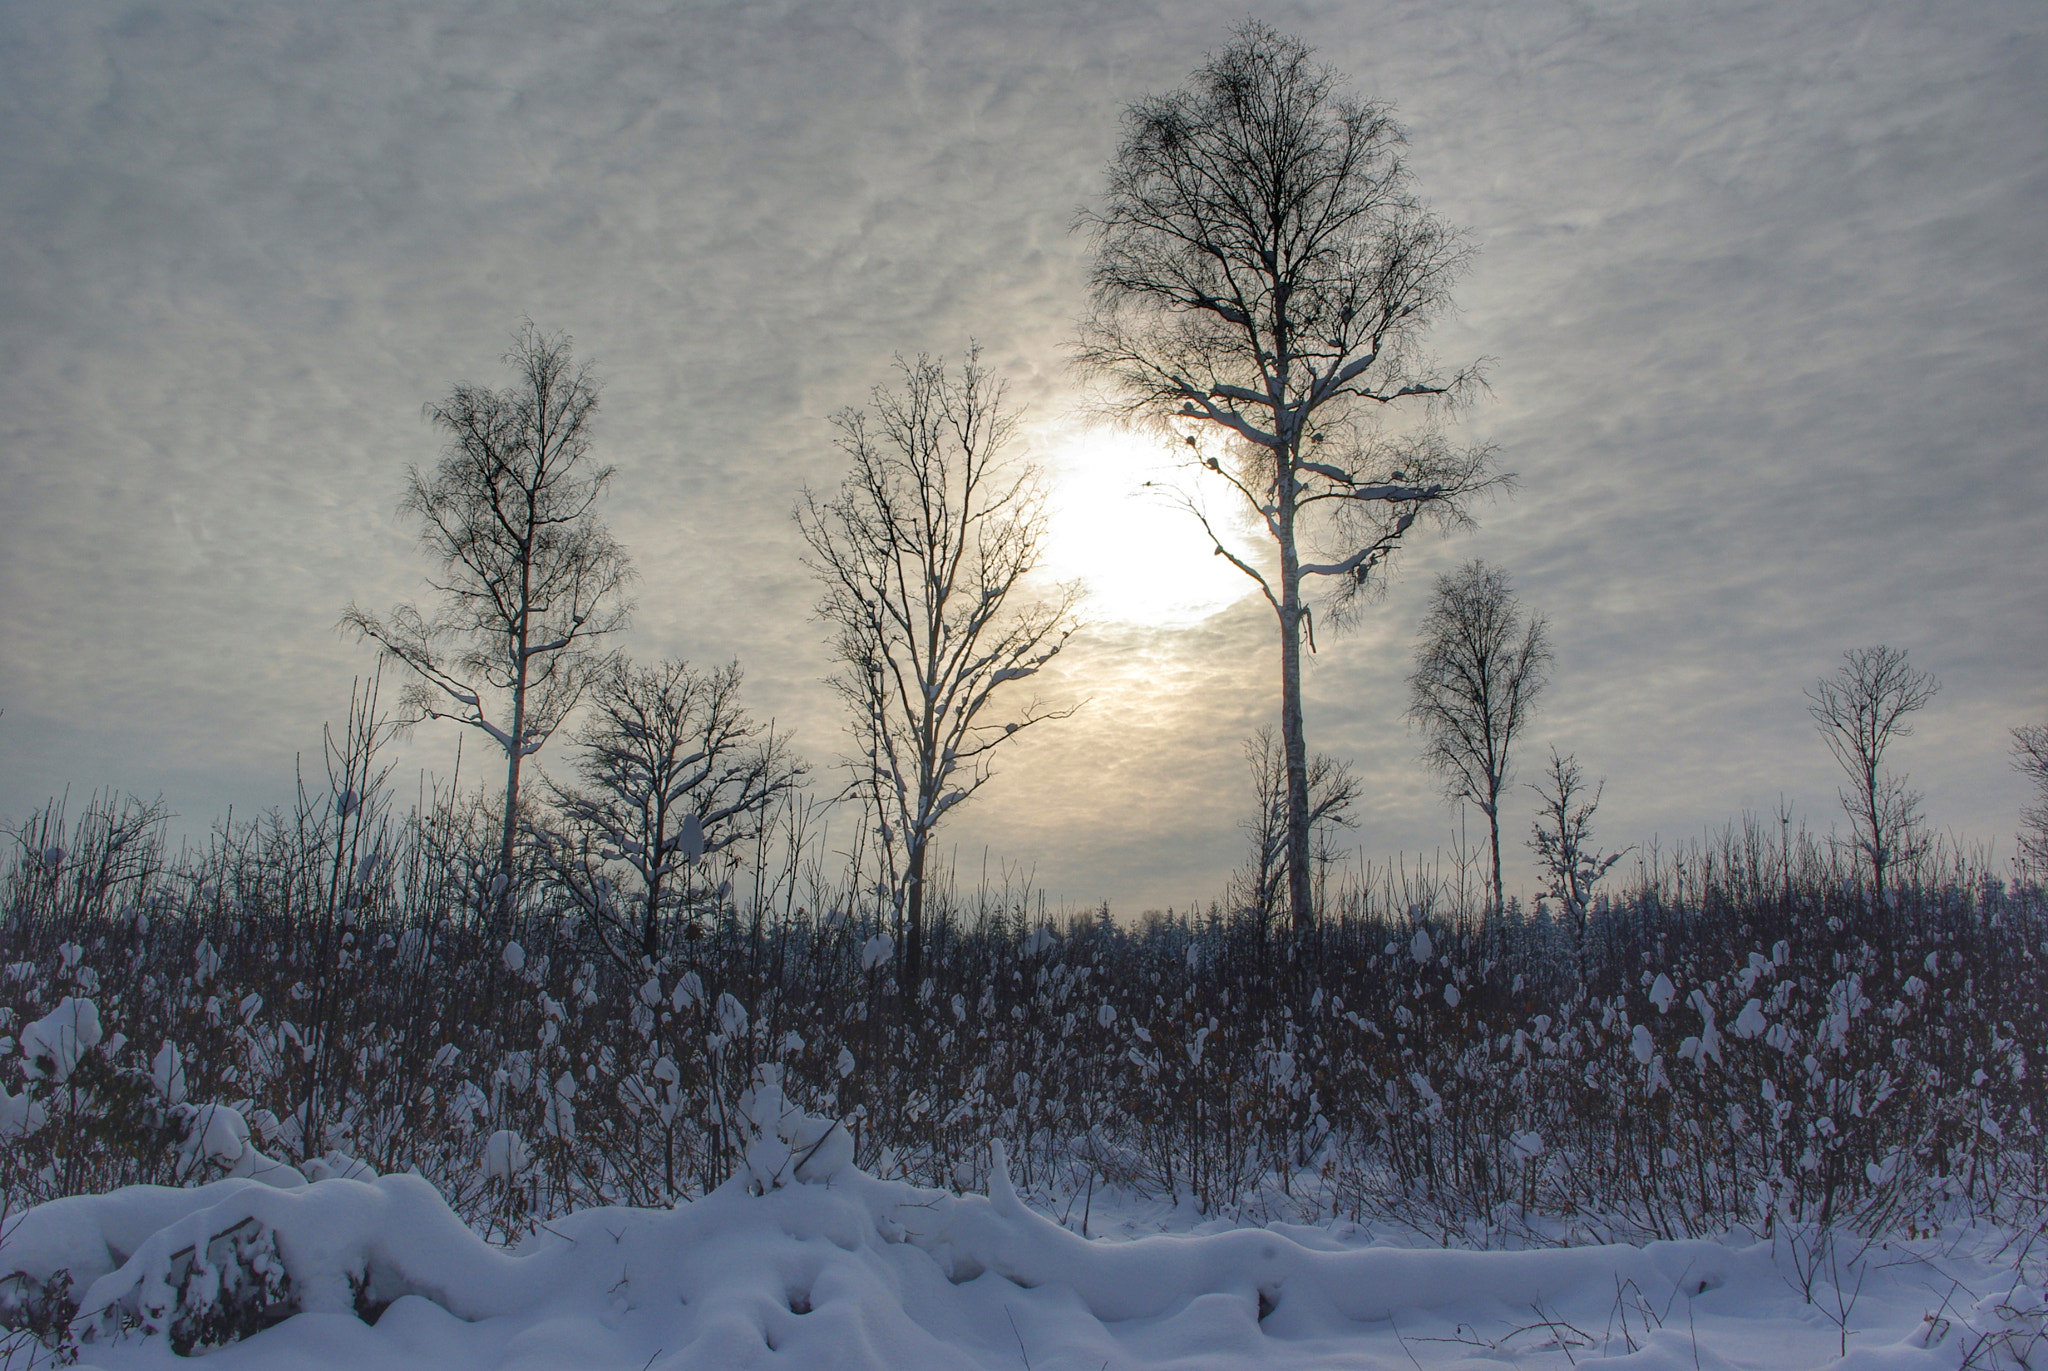 Pentax K-m (K2000) sample photo. Frosty sky photography